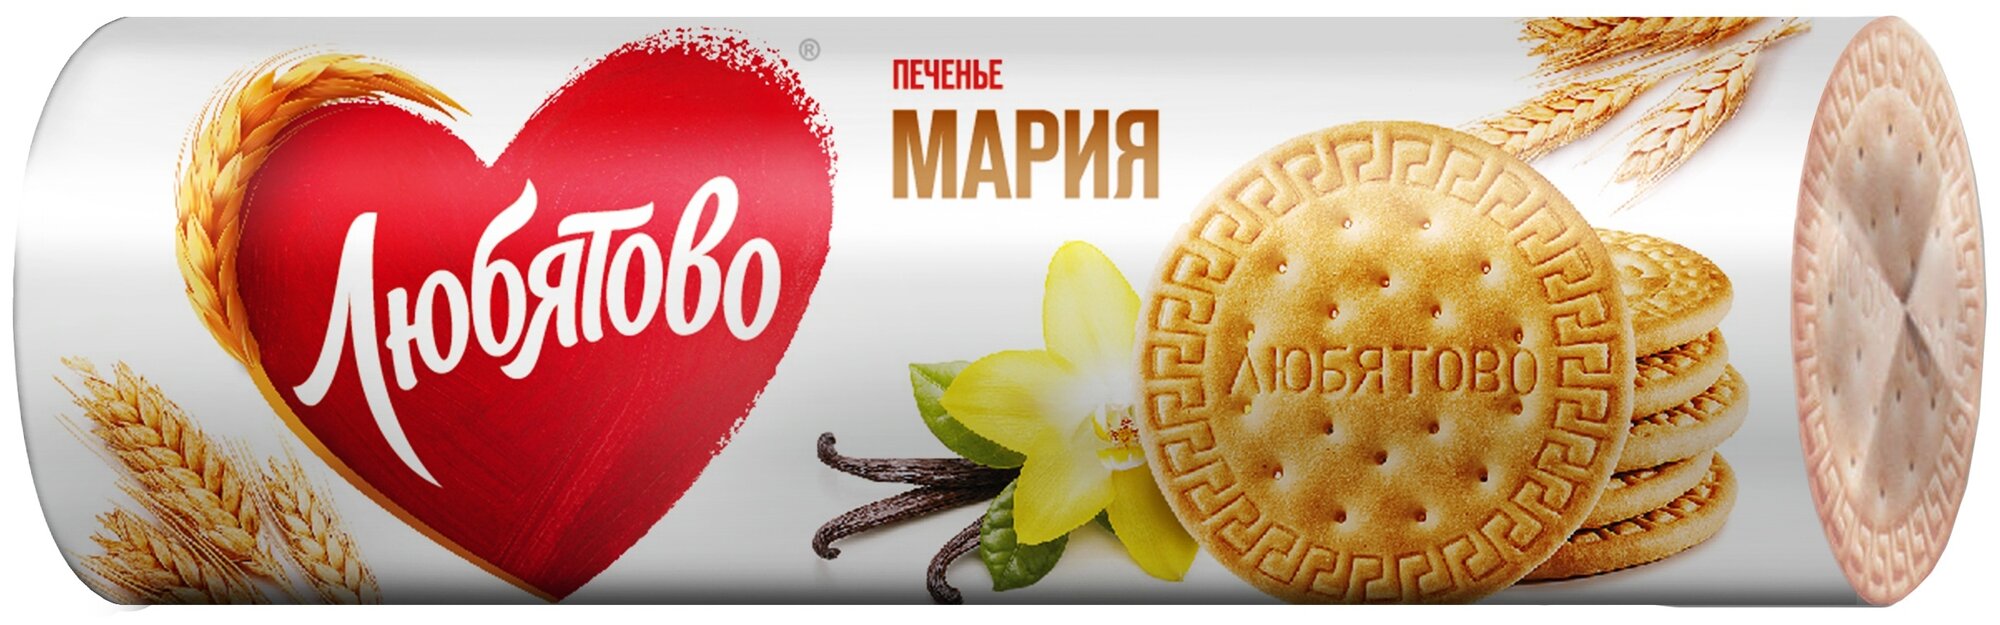 Печенье Любятово Мария традиционное 165г - фото №1